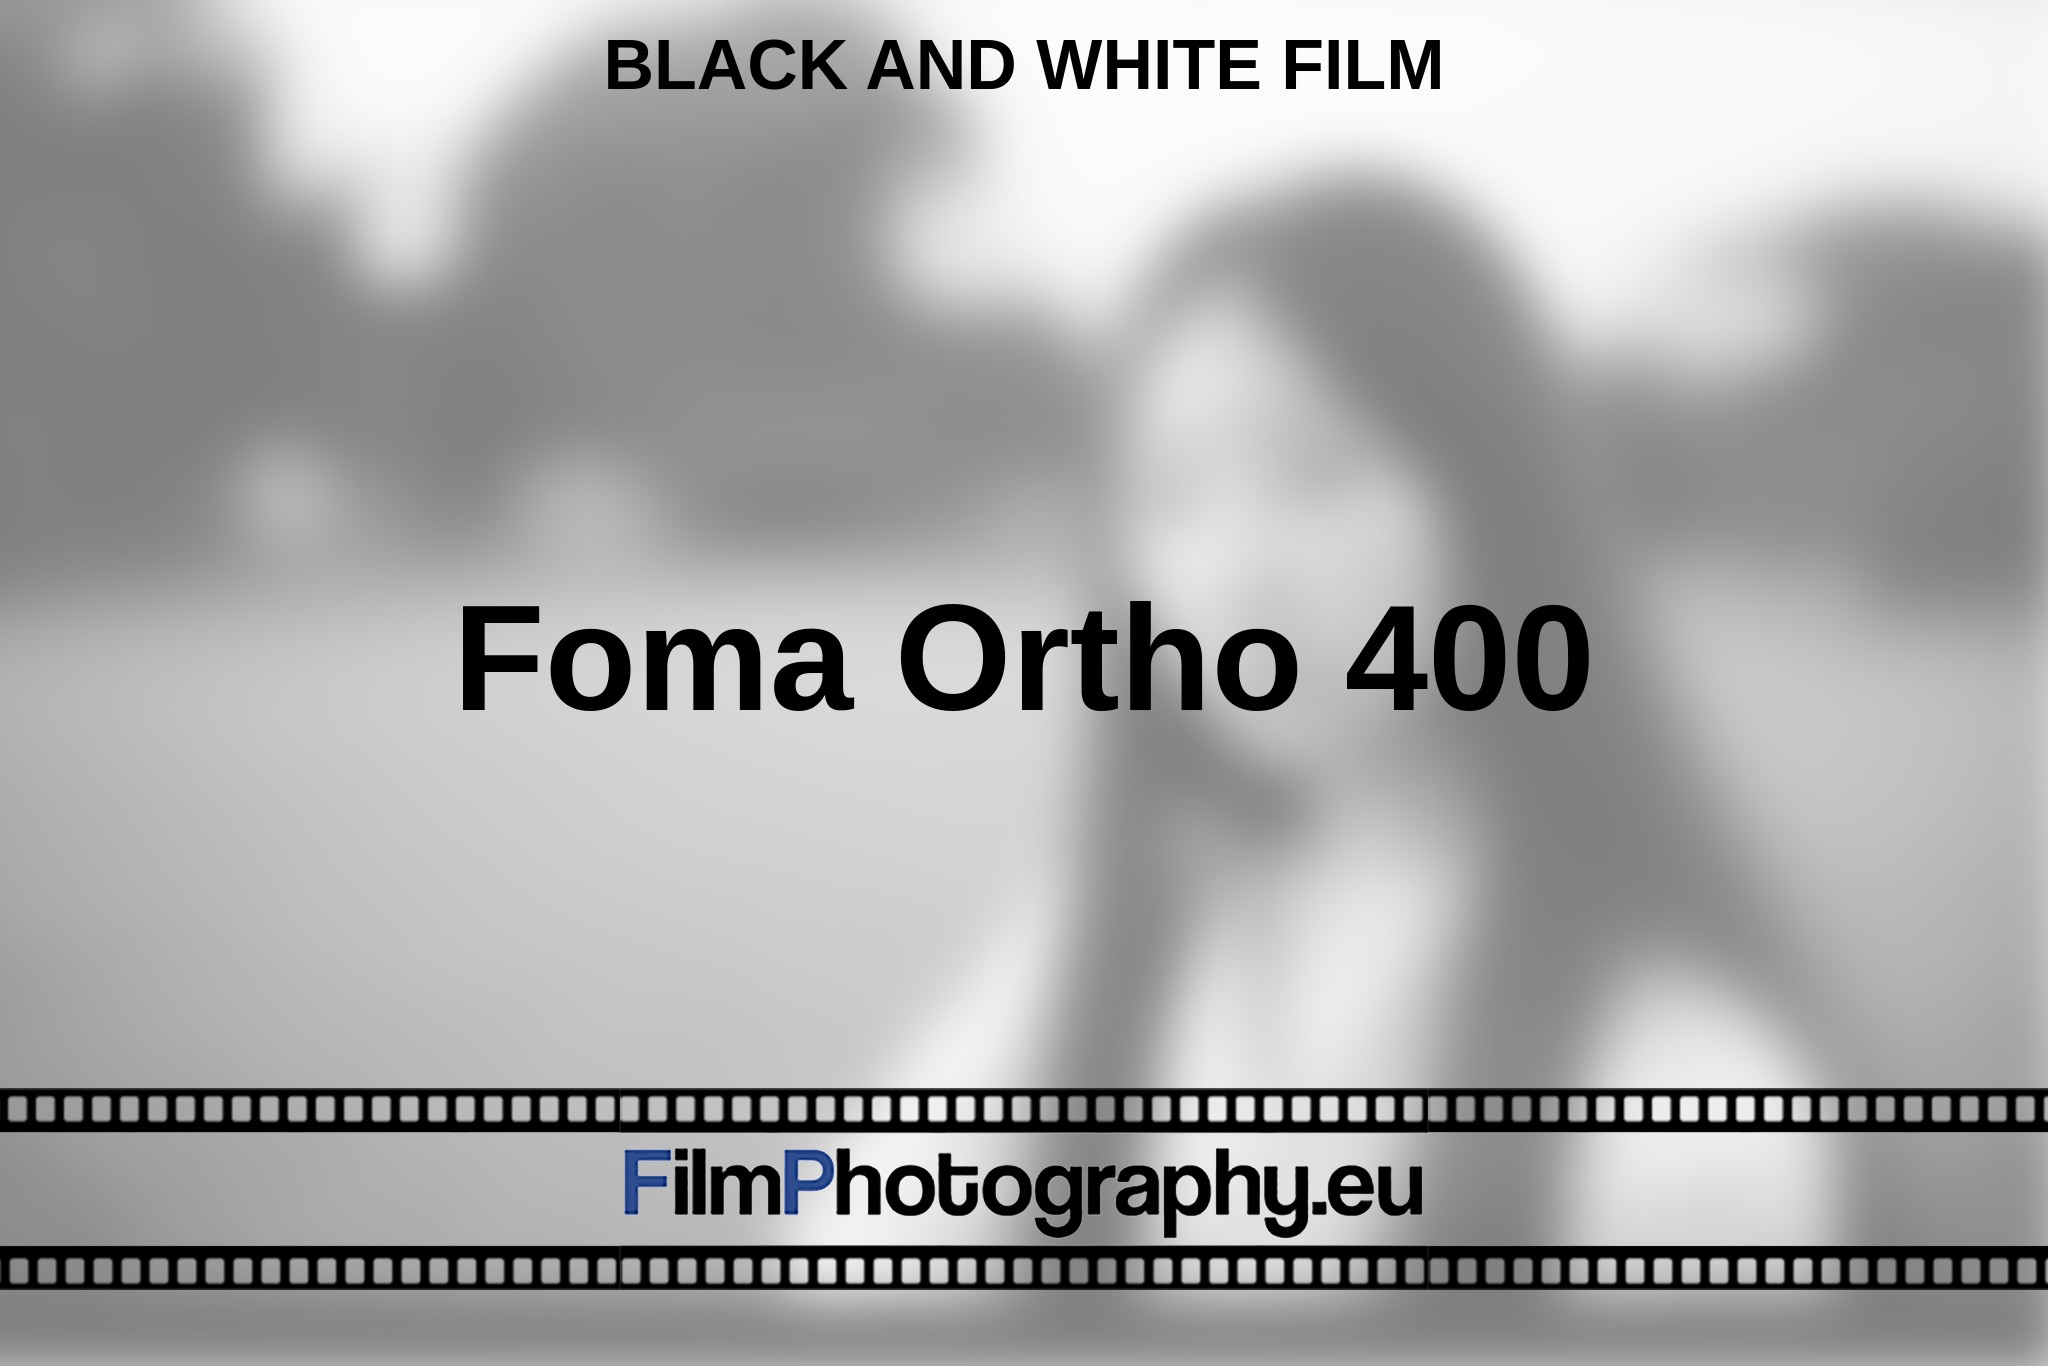 foma-ortho-400-black-and-white-film-en-bnv.jpg